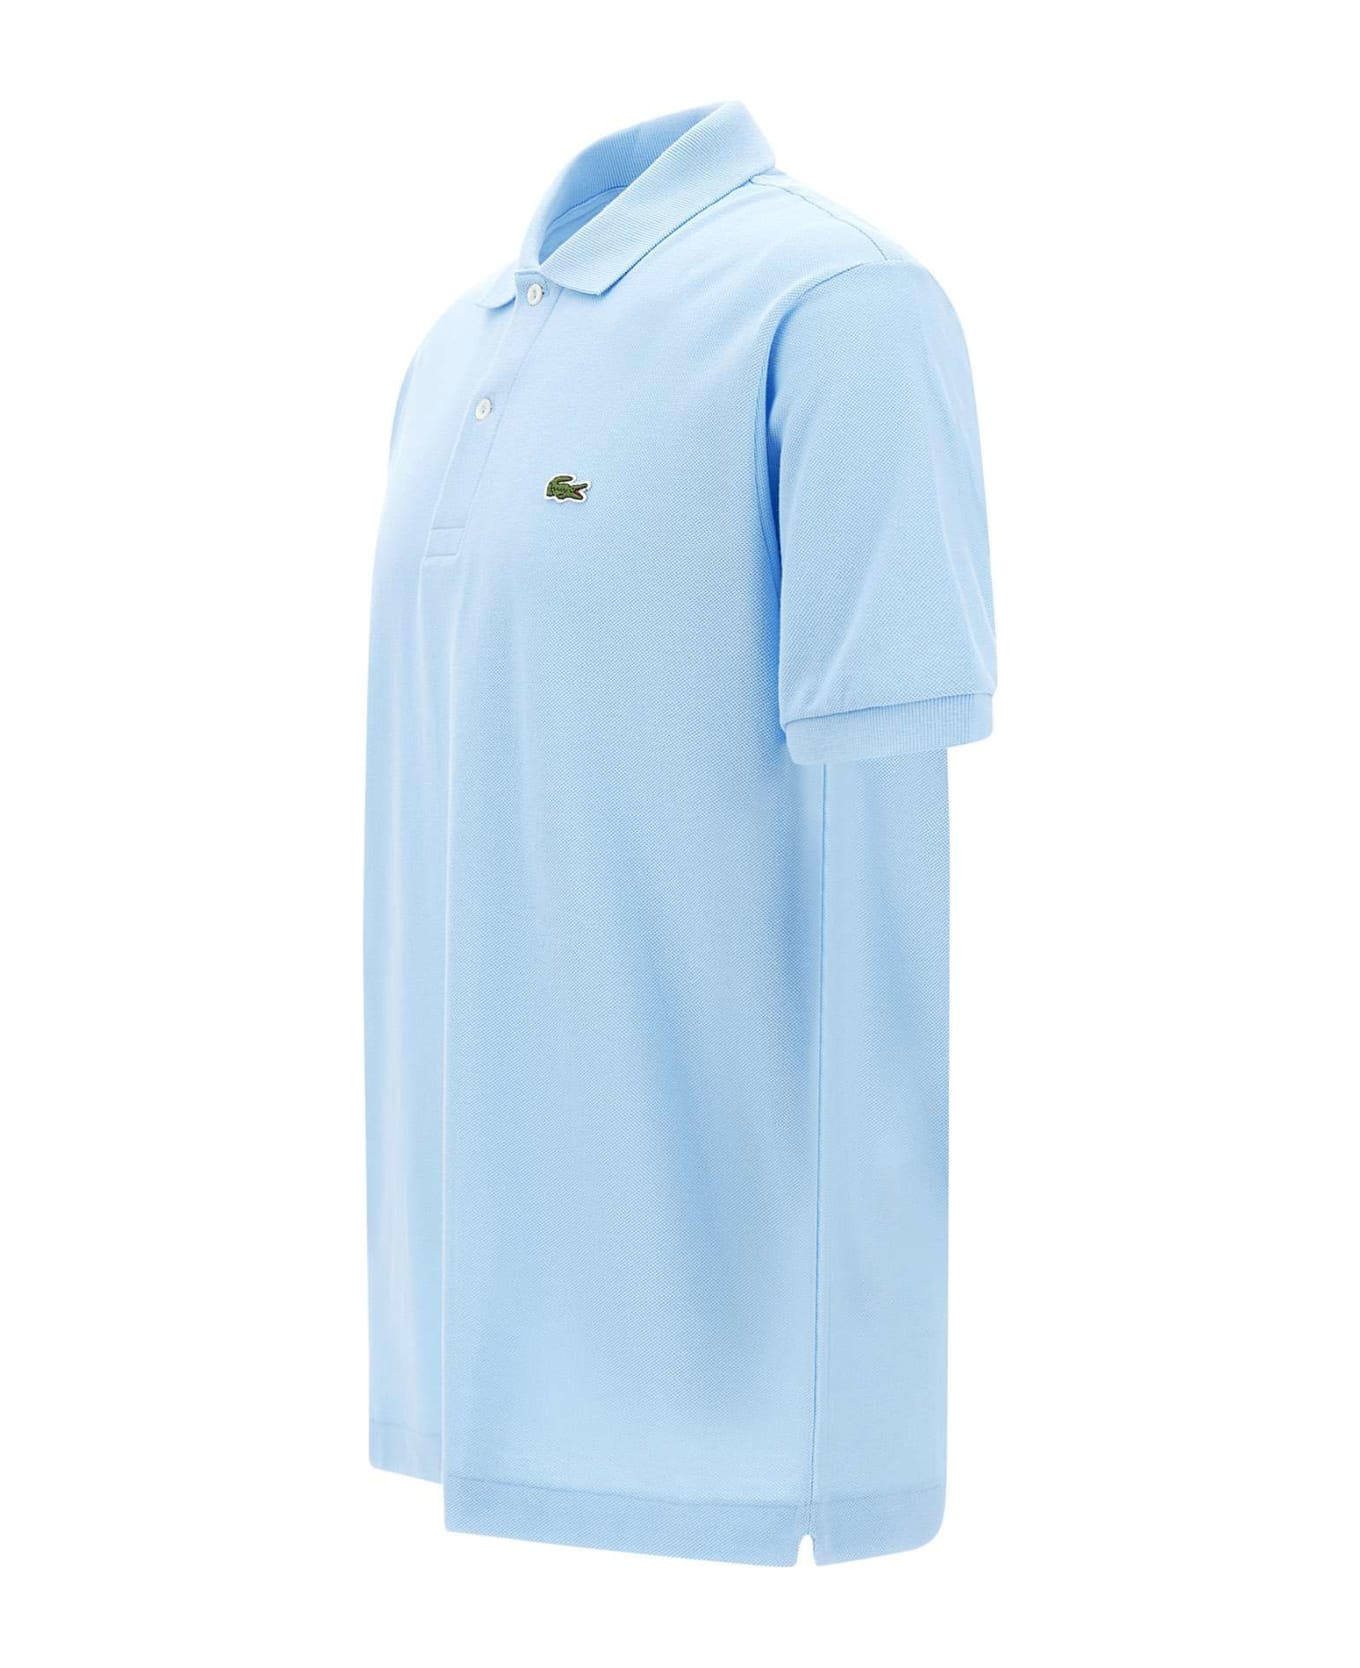 Lacoste Cotton Piquet Polo Shirt - LIGHT BLUE ポロシャツ